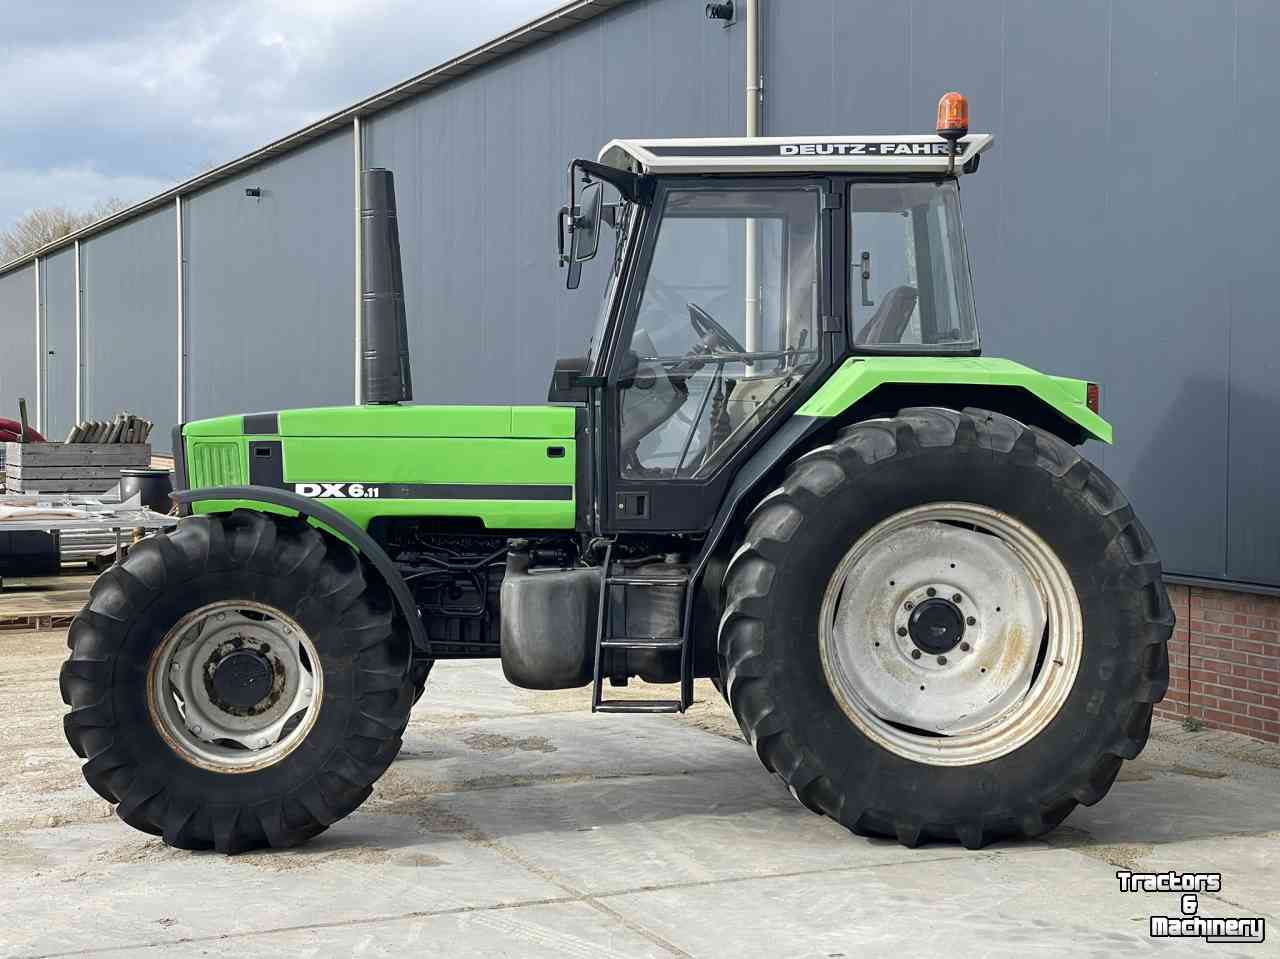 Tractors Deutz-Fahr Agrostar DX 6.11